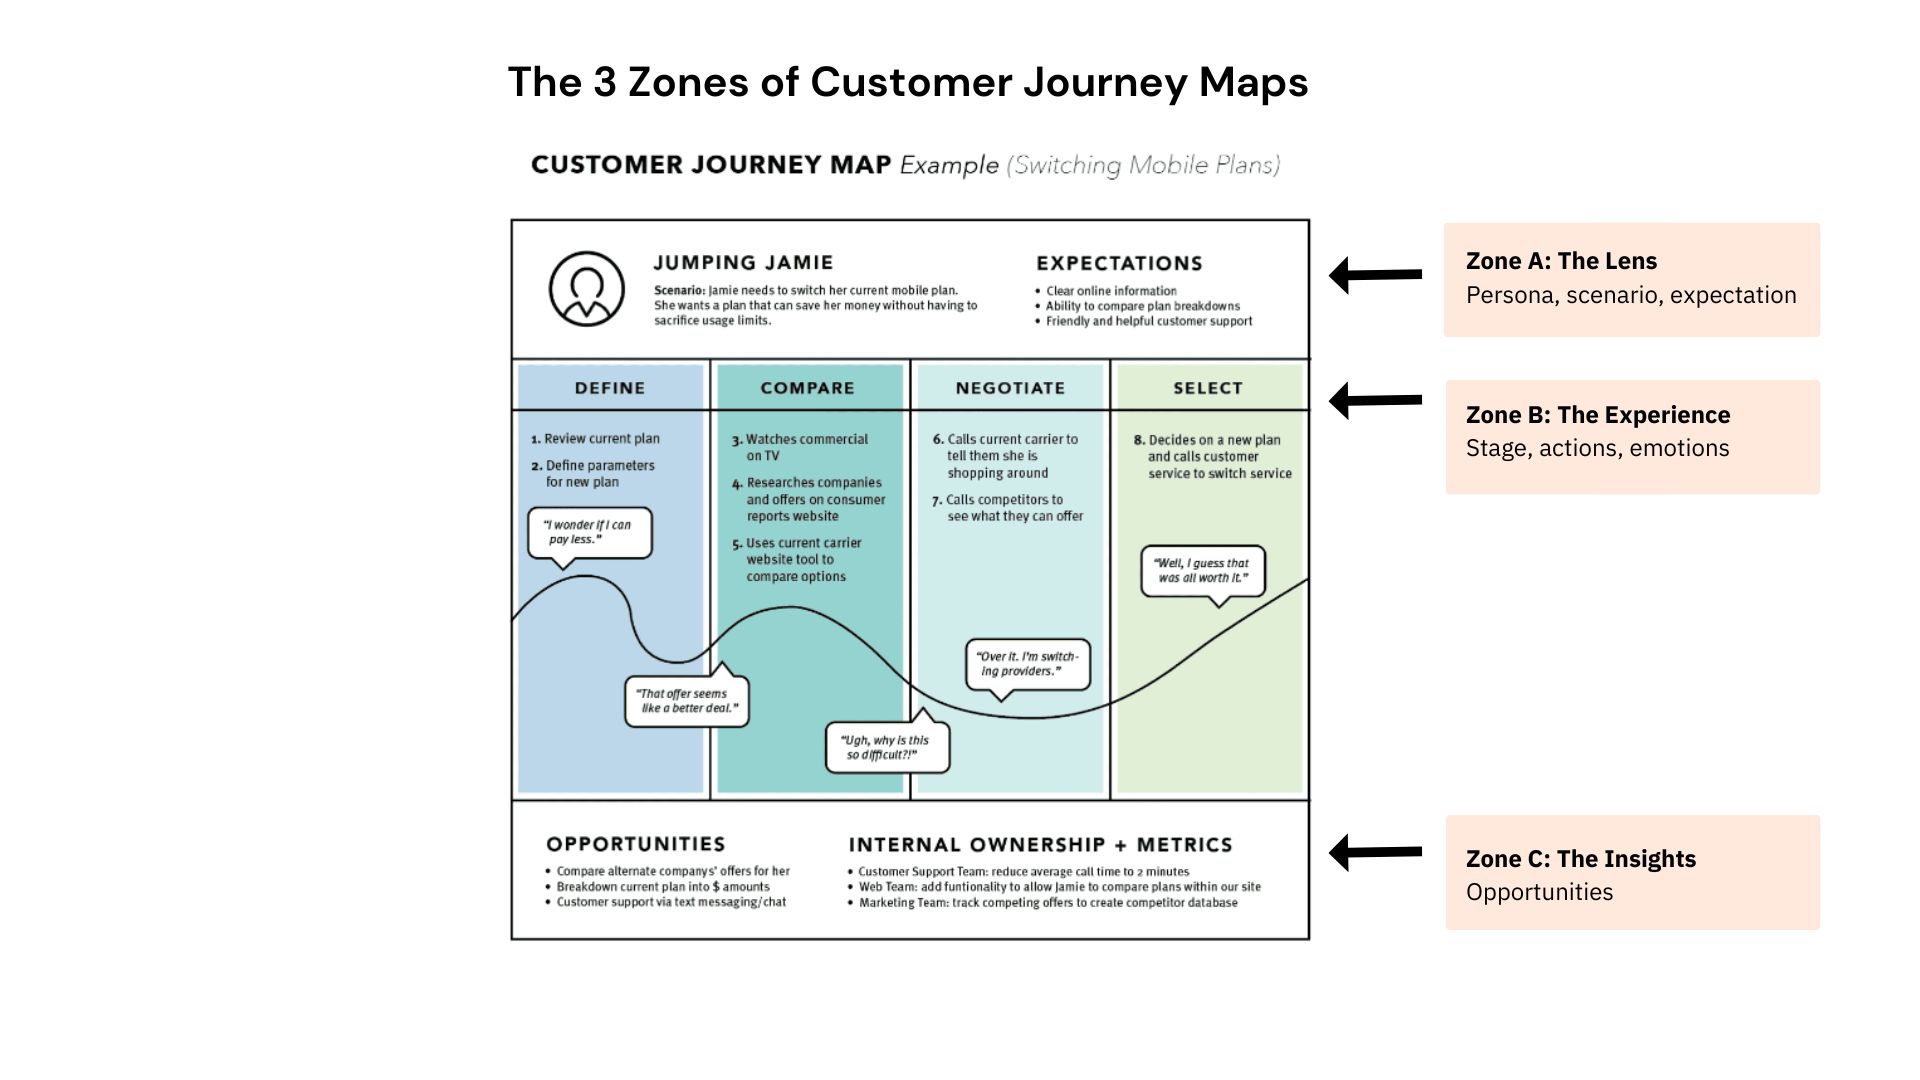 zones-of-customer-journey-maps